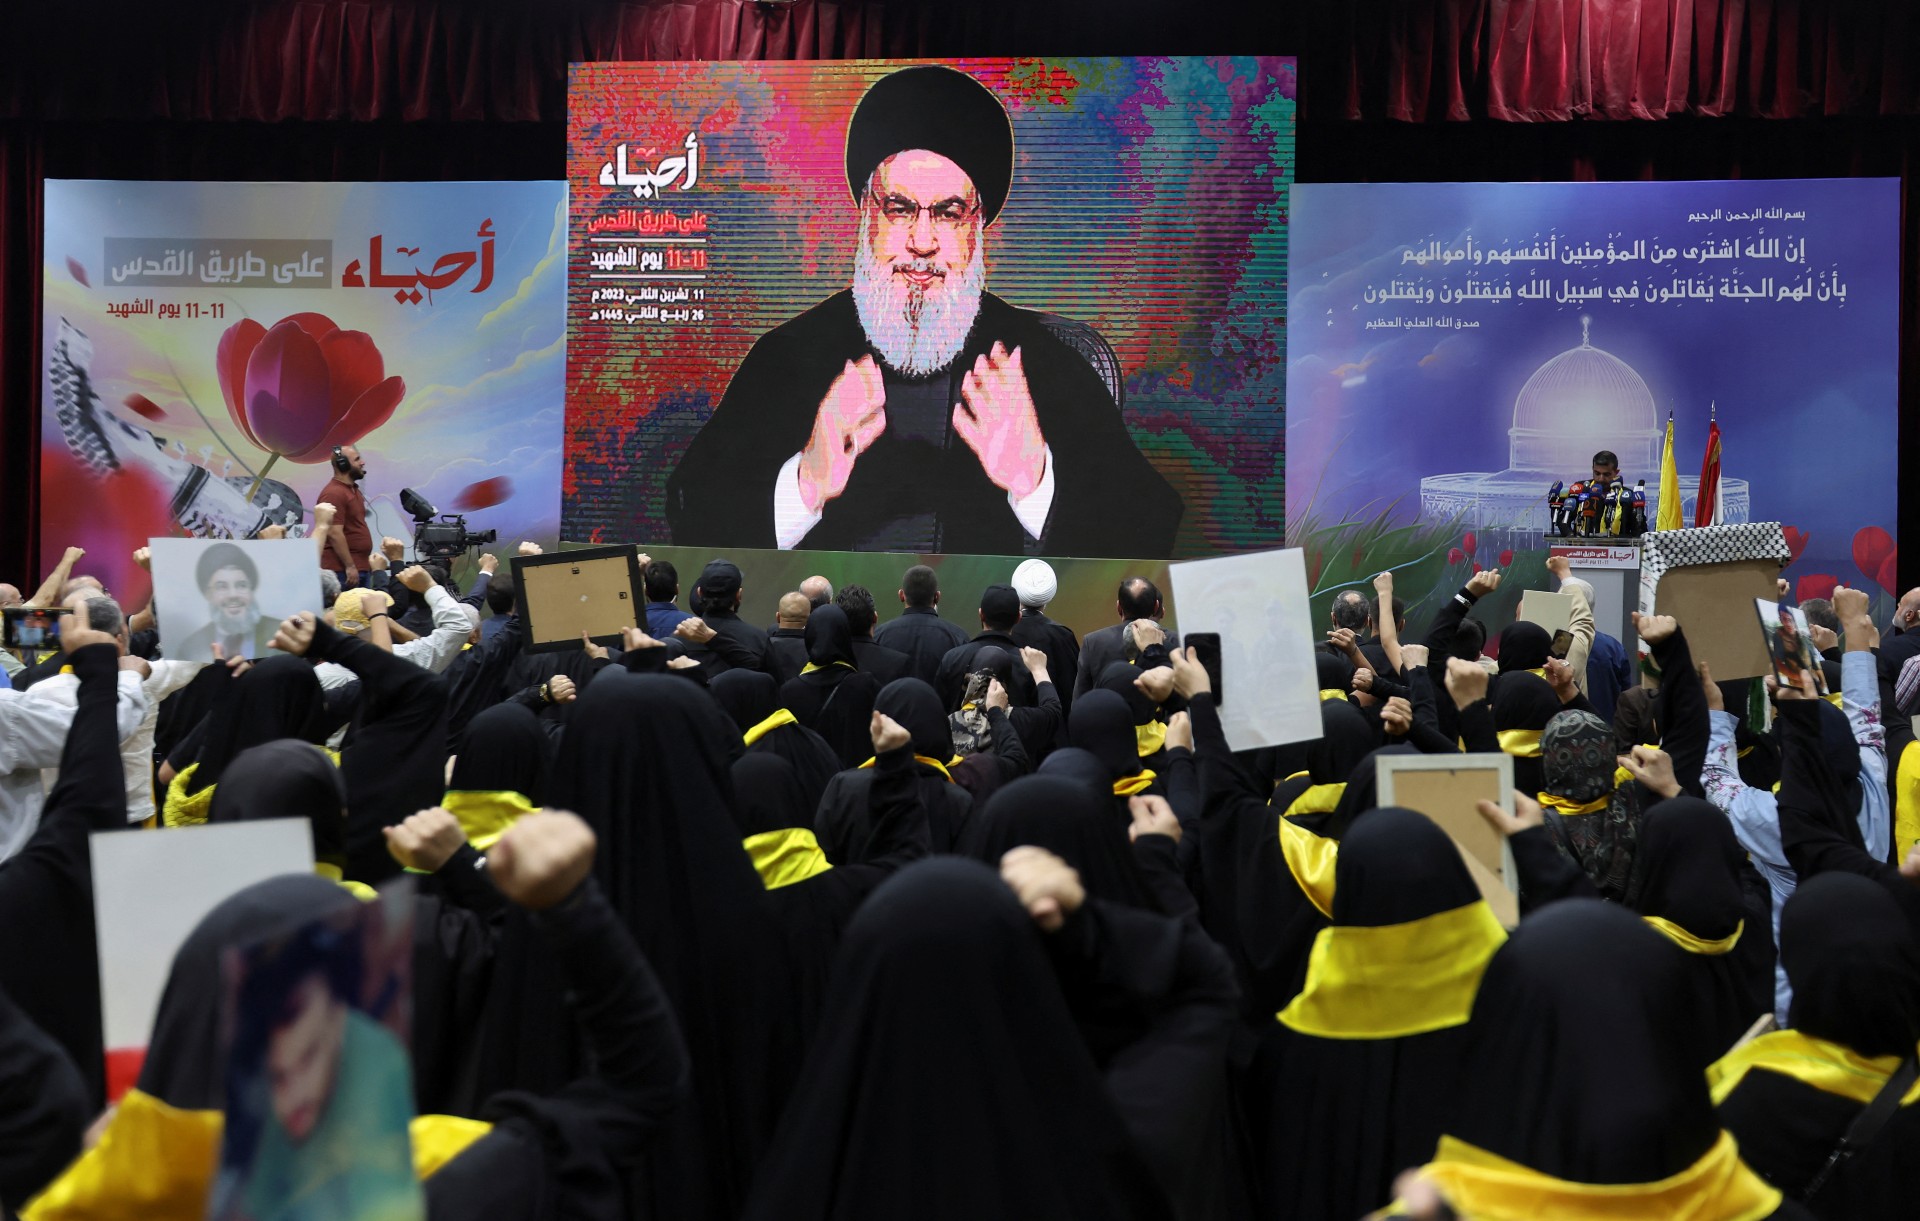 Partidarios observan al secretario general de Hezbollah, Hassan Nasrallah, pronunciar un discurso en el Líbano el 11 de noviembre. (Aziz Taher/Reuters)